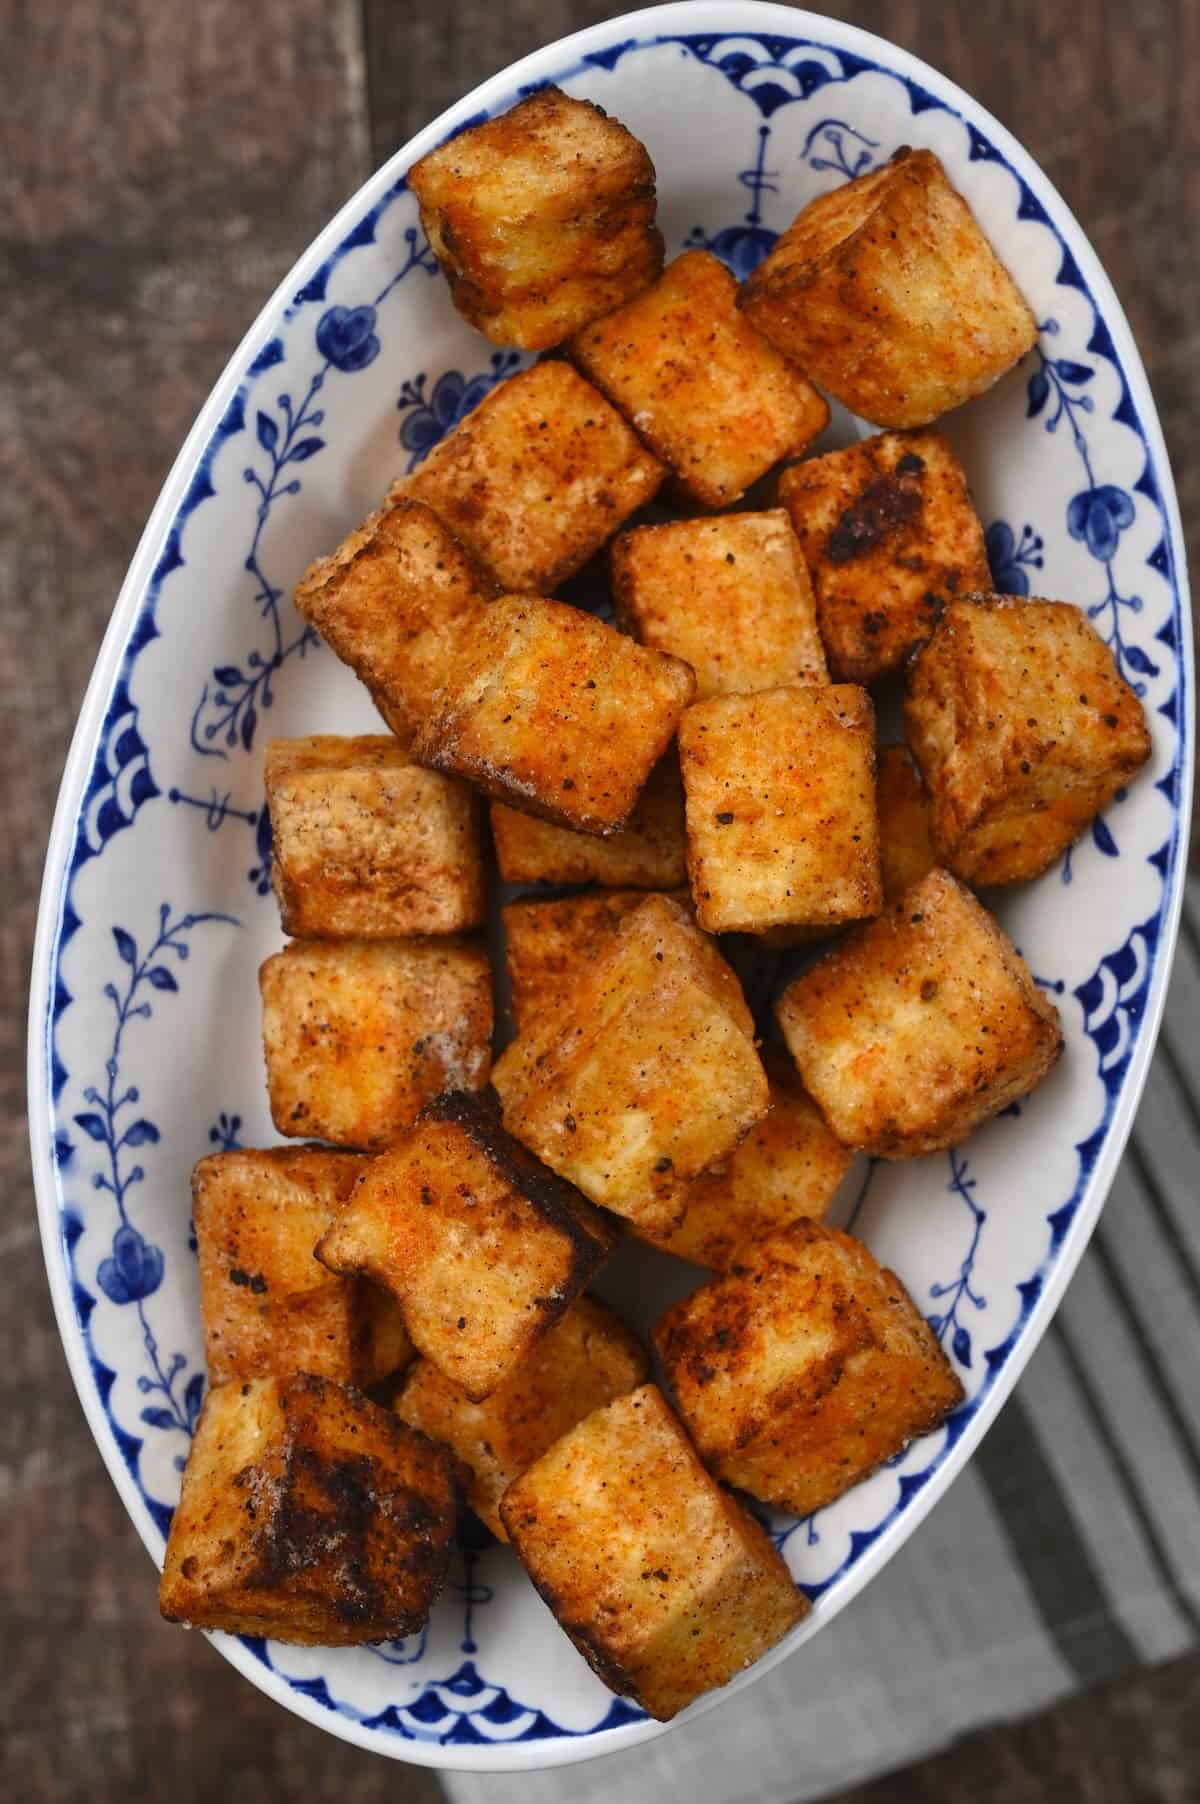 A plate with fried tofu